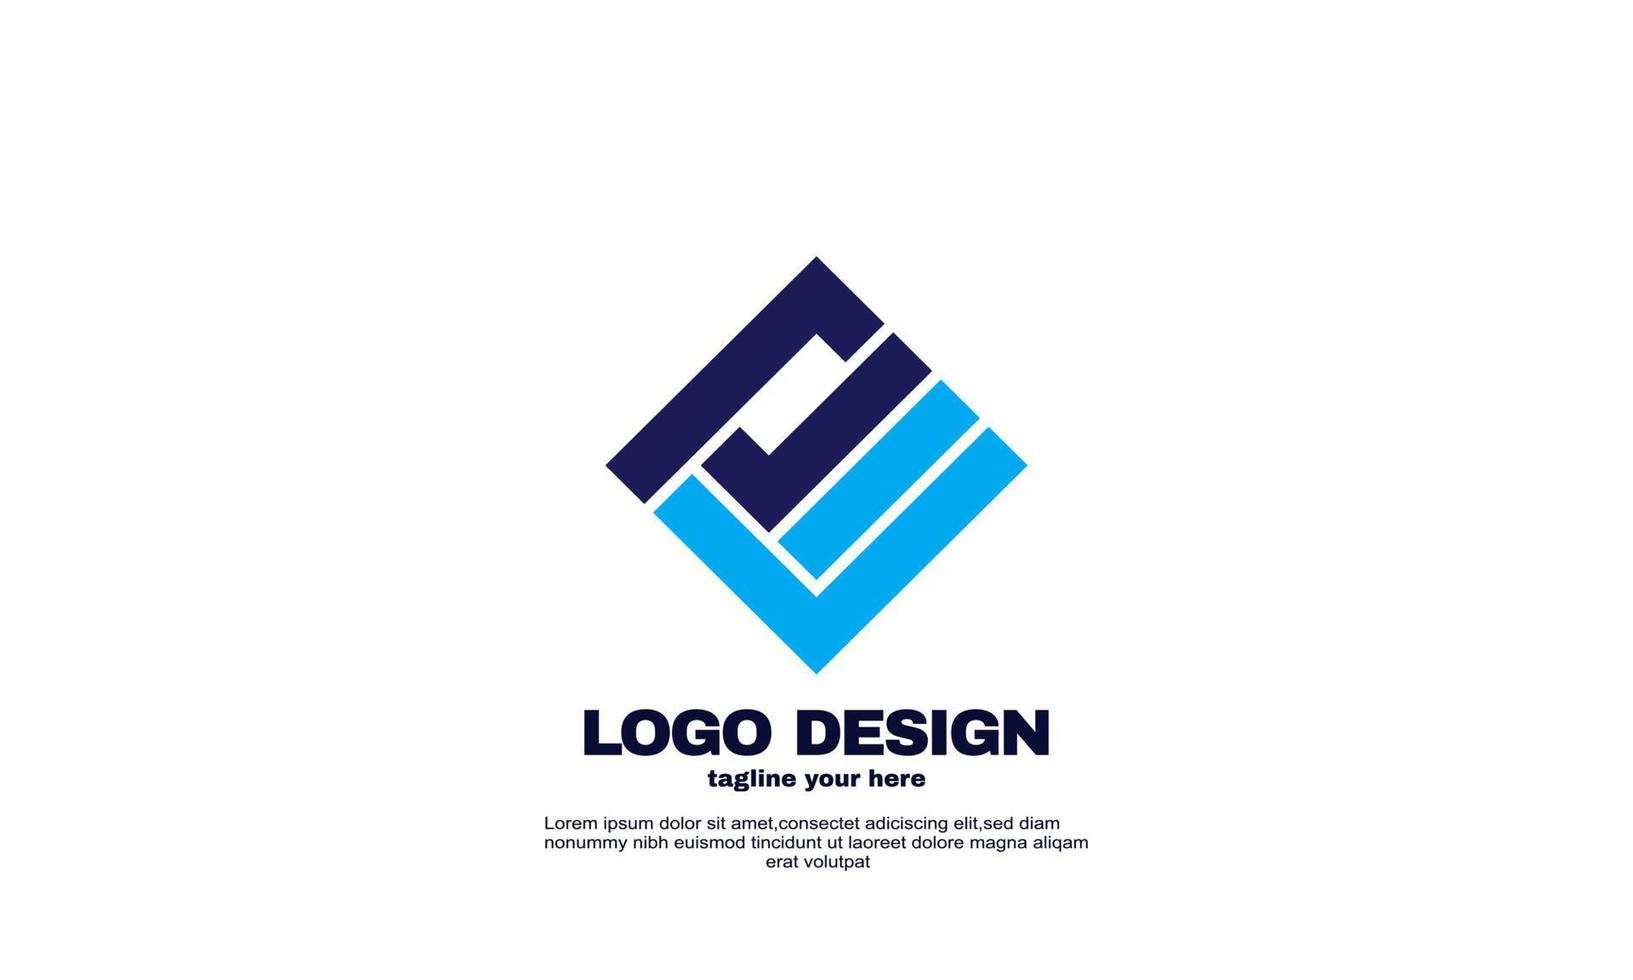 impresionantes elementos de diseño vector de diseño de logotipo único de su empresa de marca